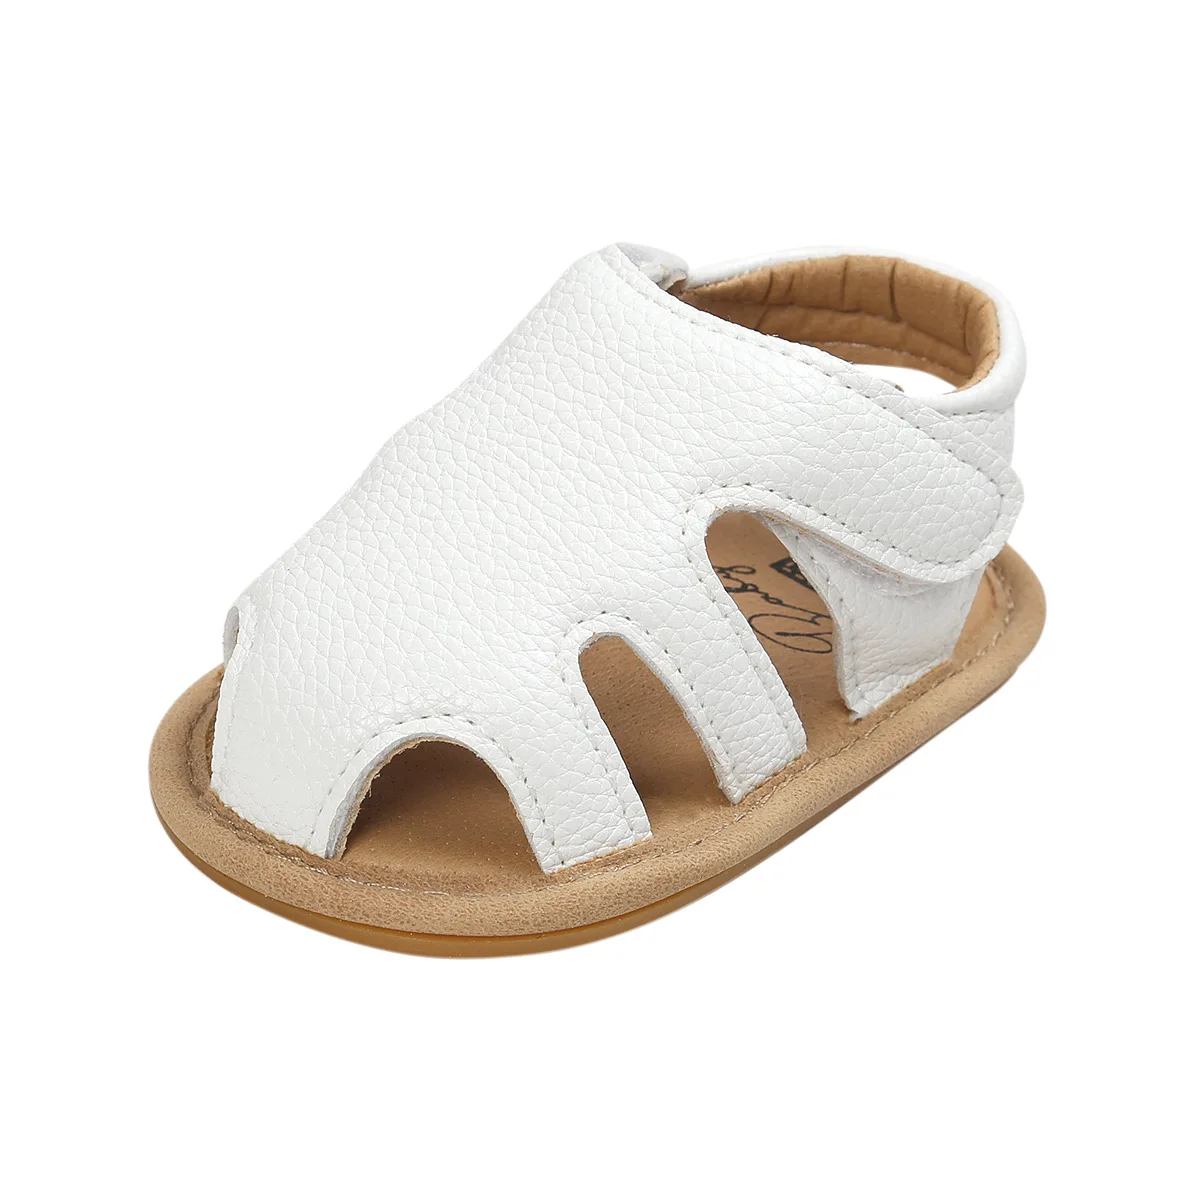 2019 новый для маленьких мальчиков сандалии выдолбленные Младенческая малышей обувь для девочек Кожаные сабо сандалии для девочек обувь для